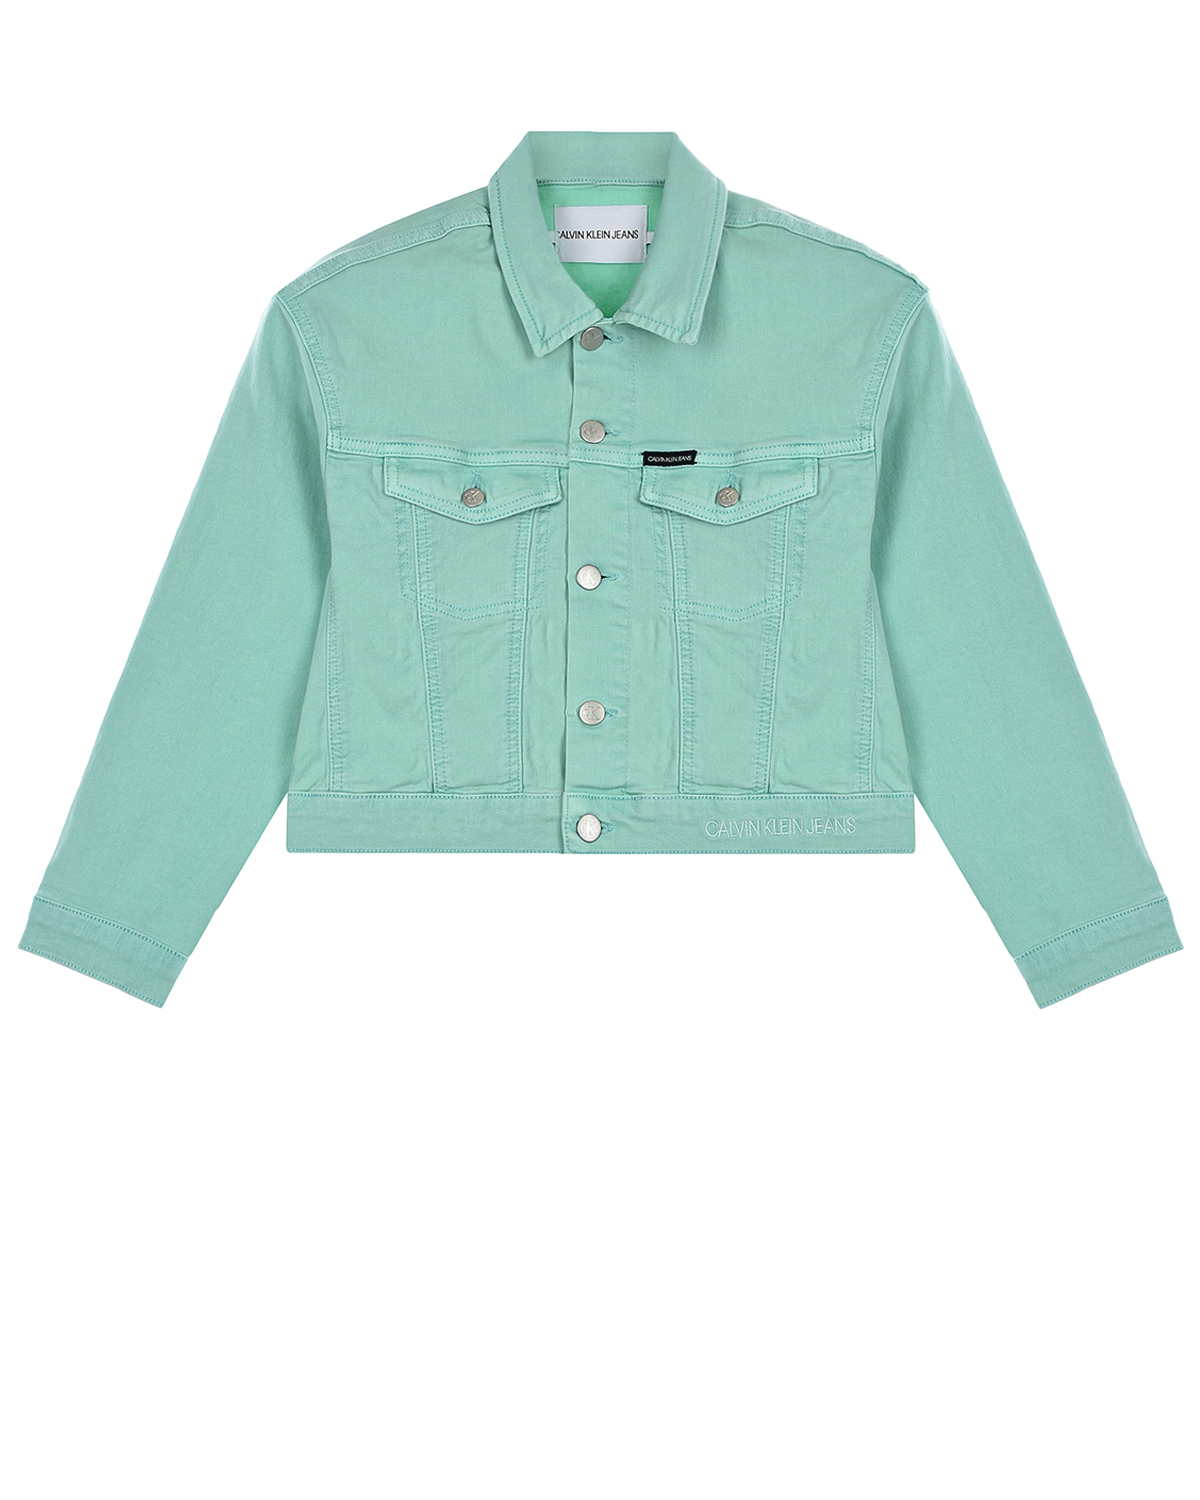 Купить Джинсовая куртка мятного цвета Calvin Klein, Мятный, 98%хлопок+2%эластан